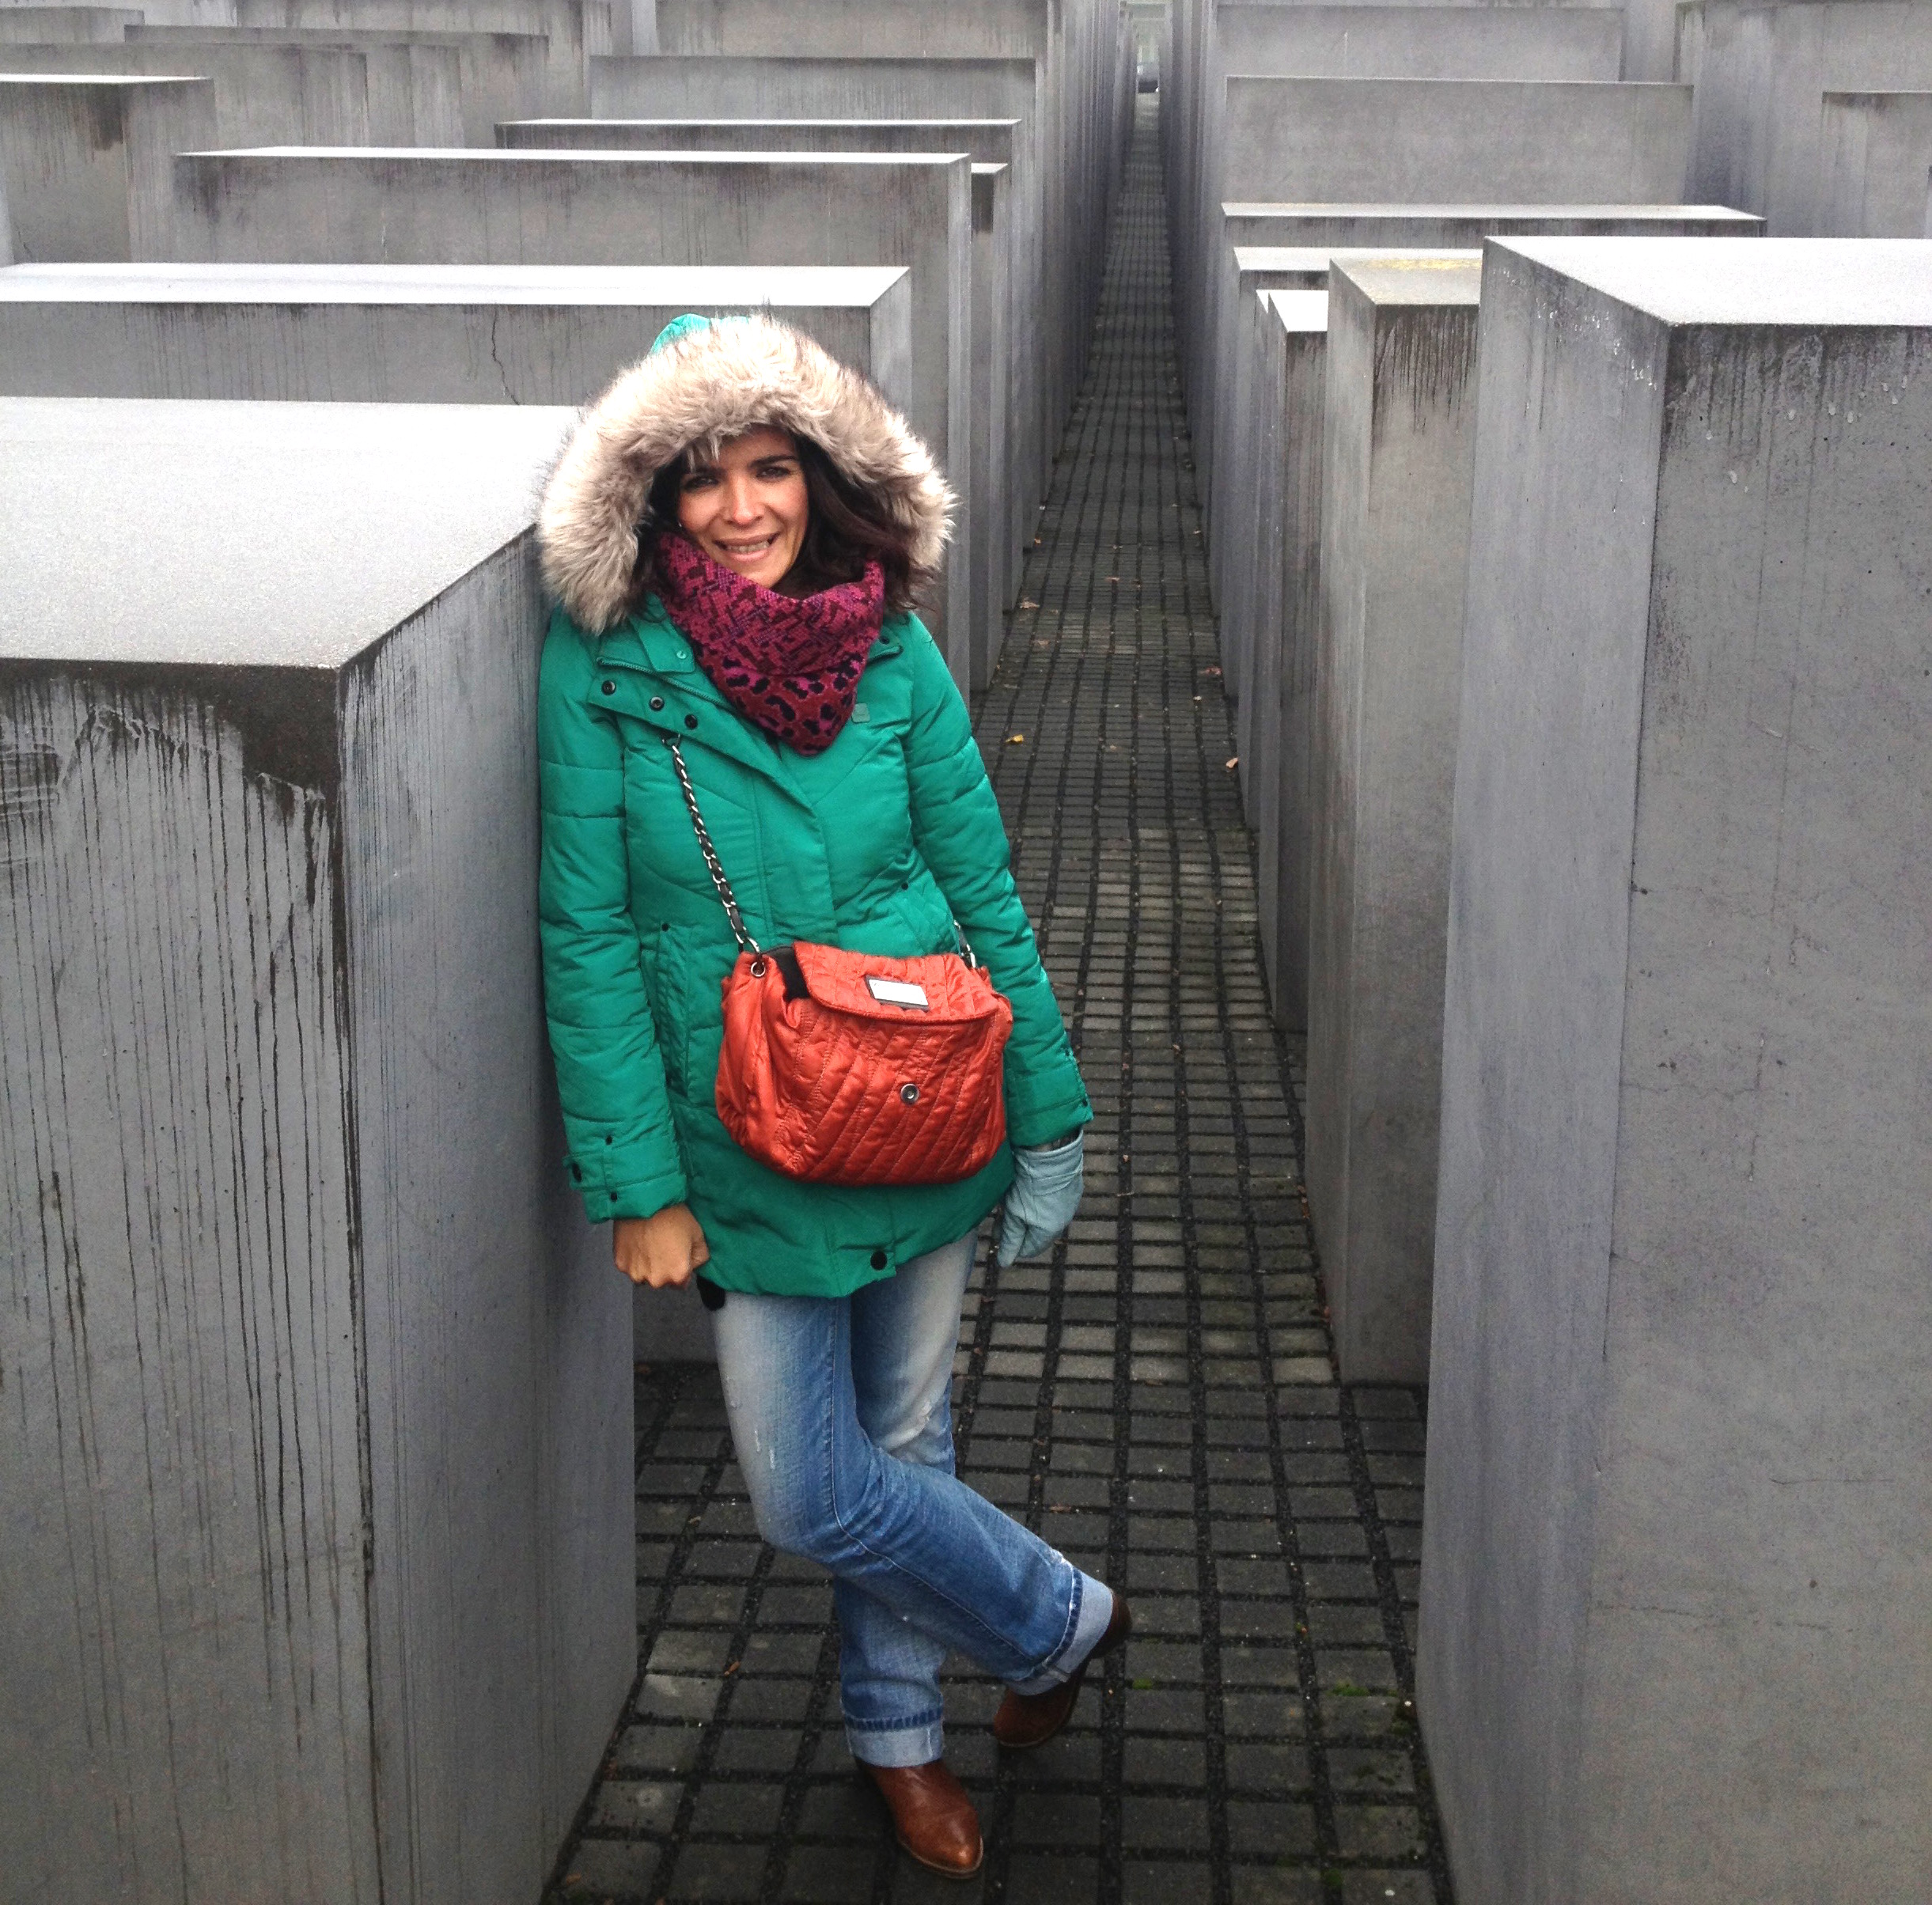 Berlim – um muro de friooooooo